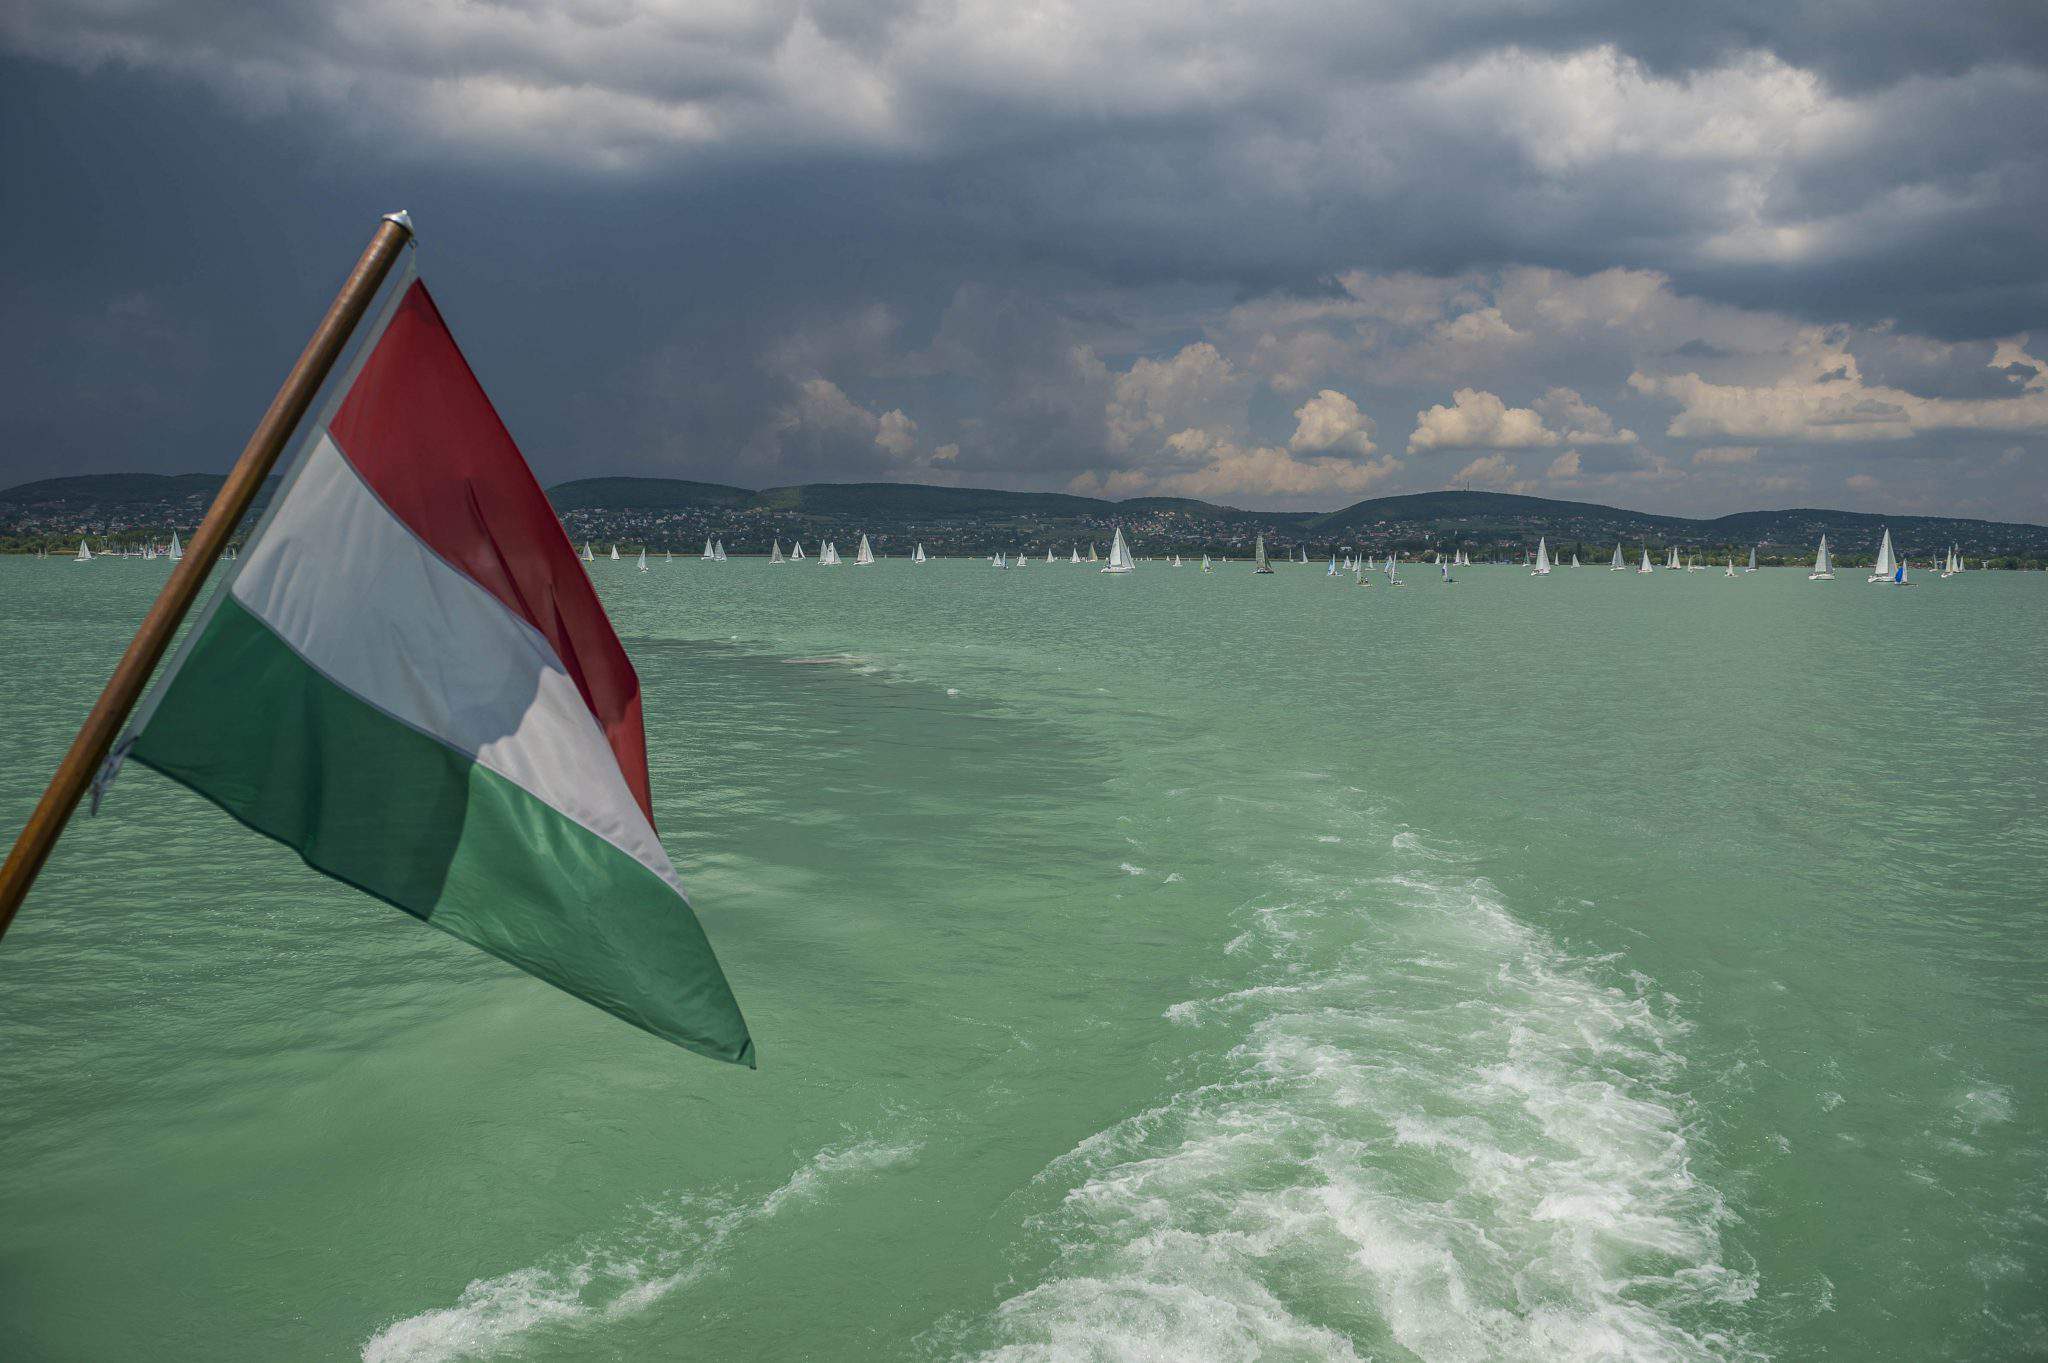 巴拉頓湖匈牙利國旗航行